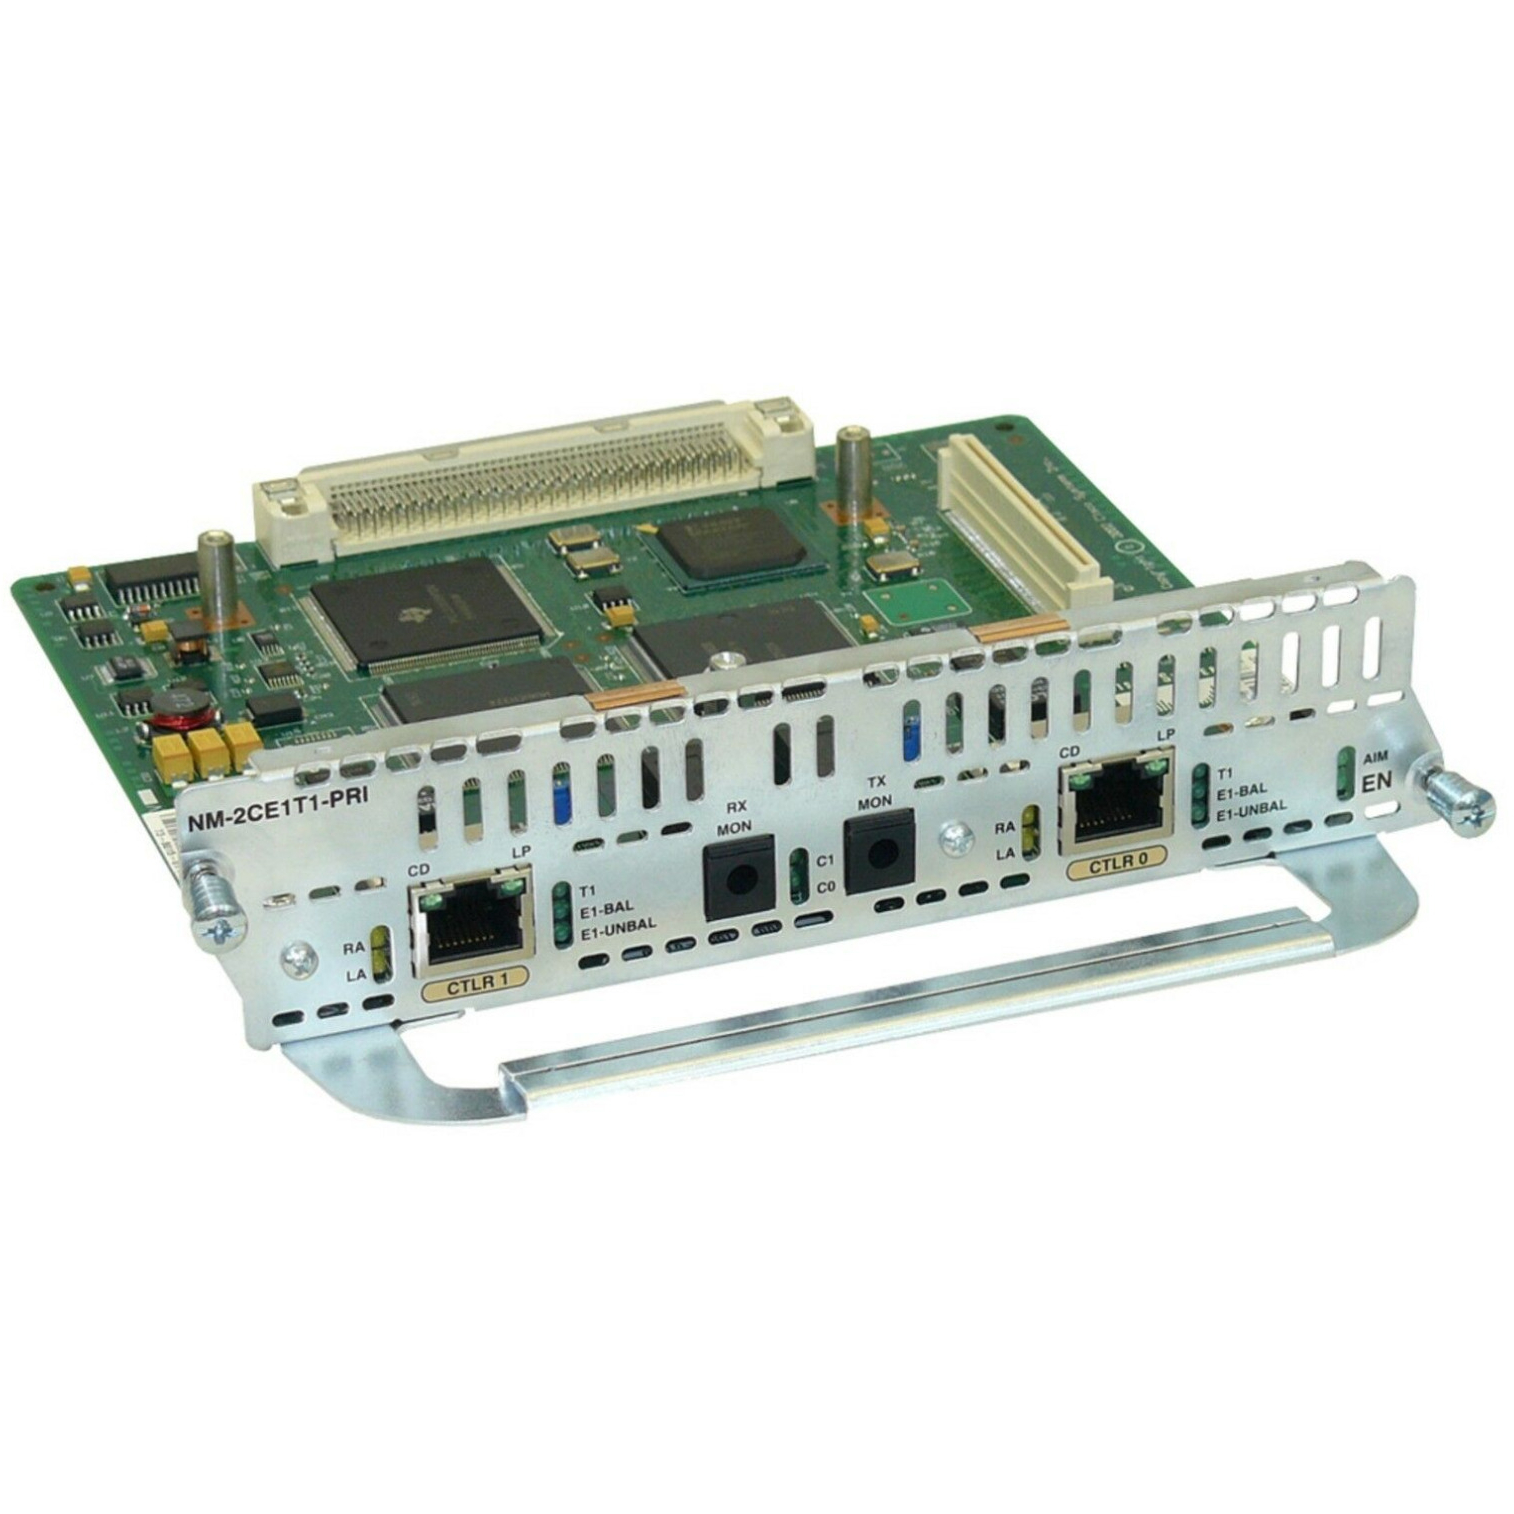 Cisco NM-2CE1T1-PRI